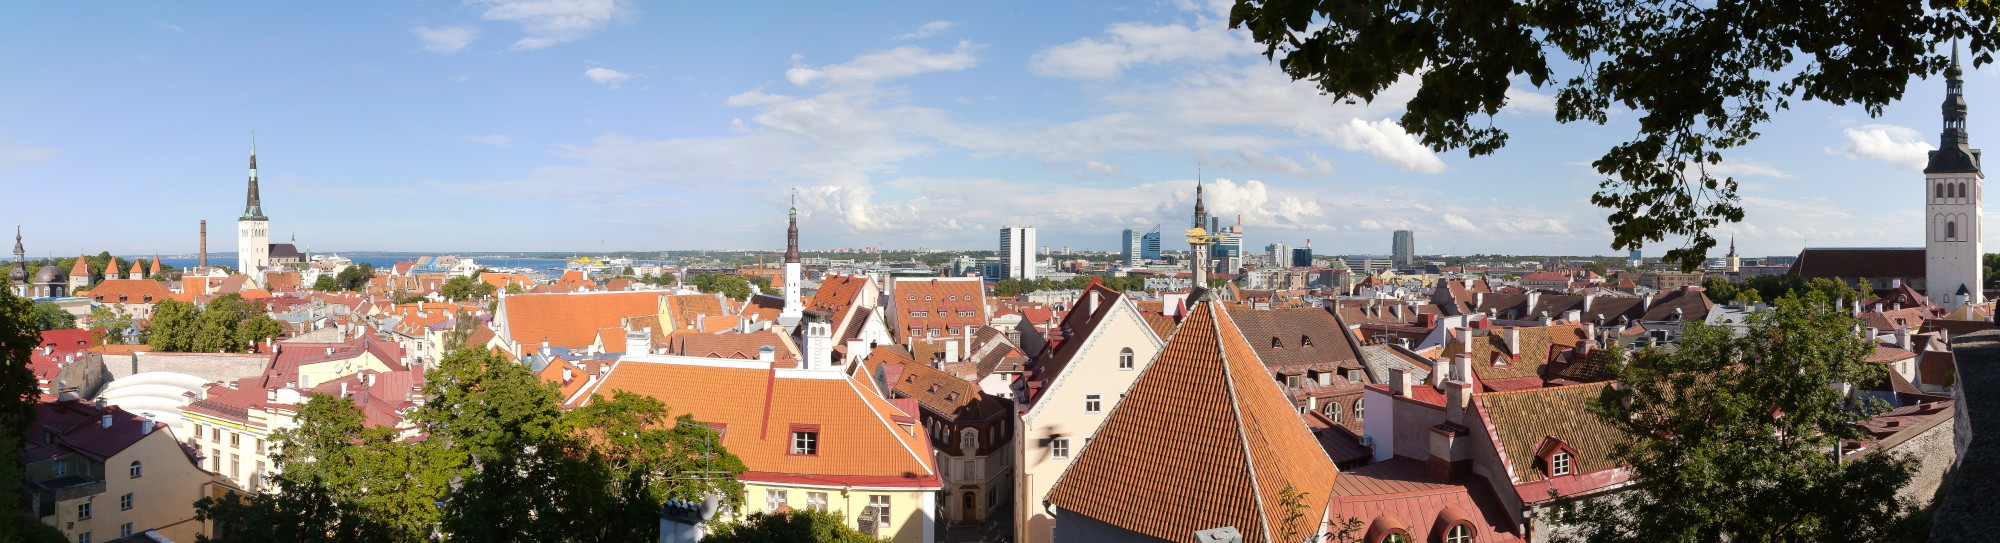 Vistas panorámicas desde Toompea, Tallinn, Estonia, 2012-08-05, DD 01-03 PAN